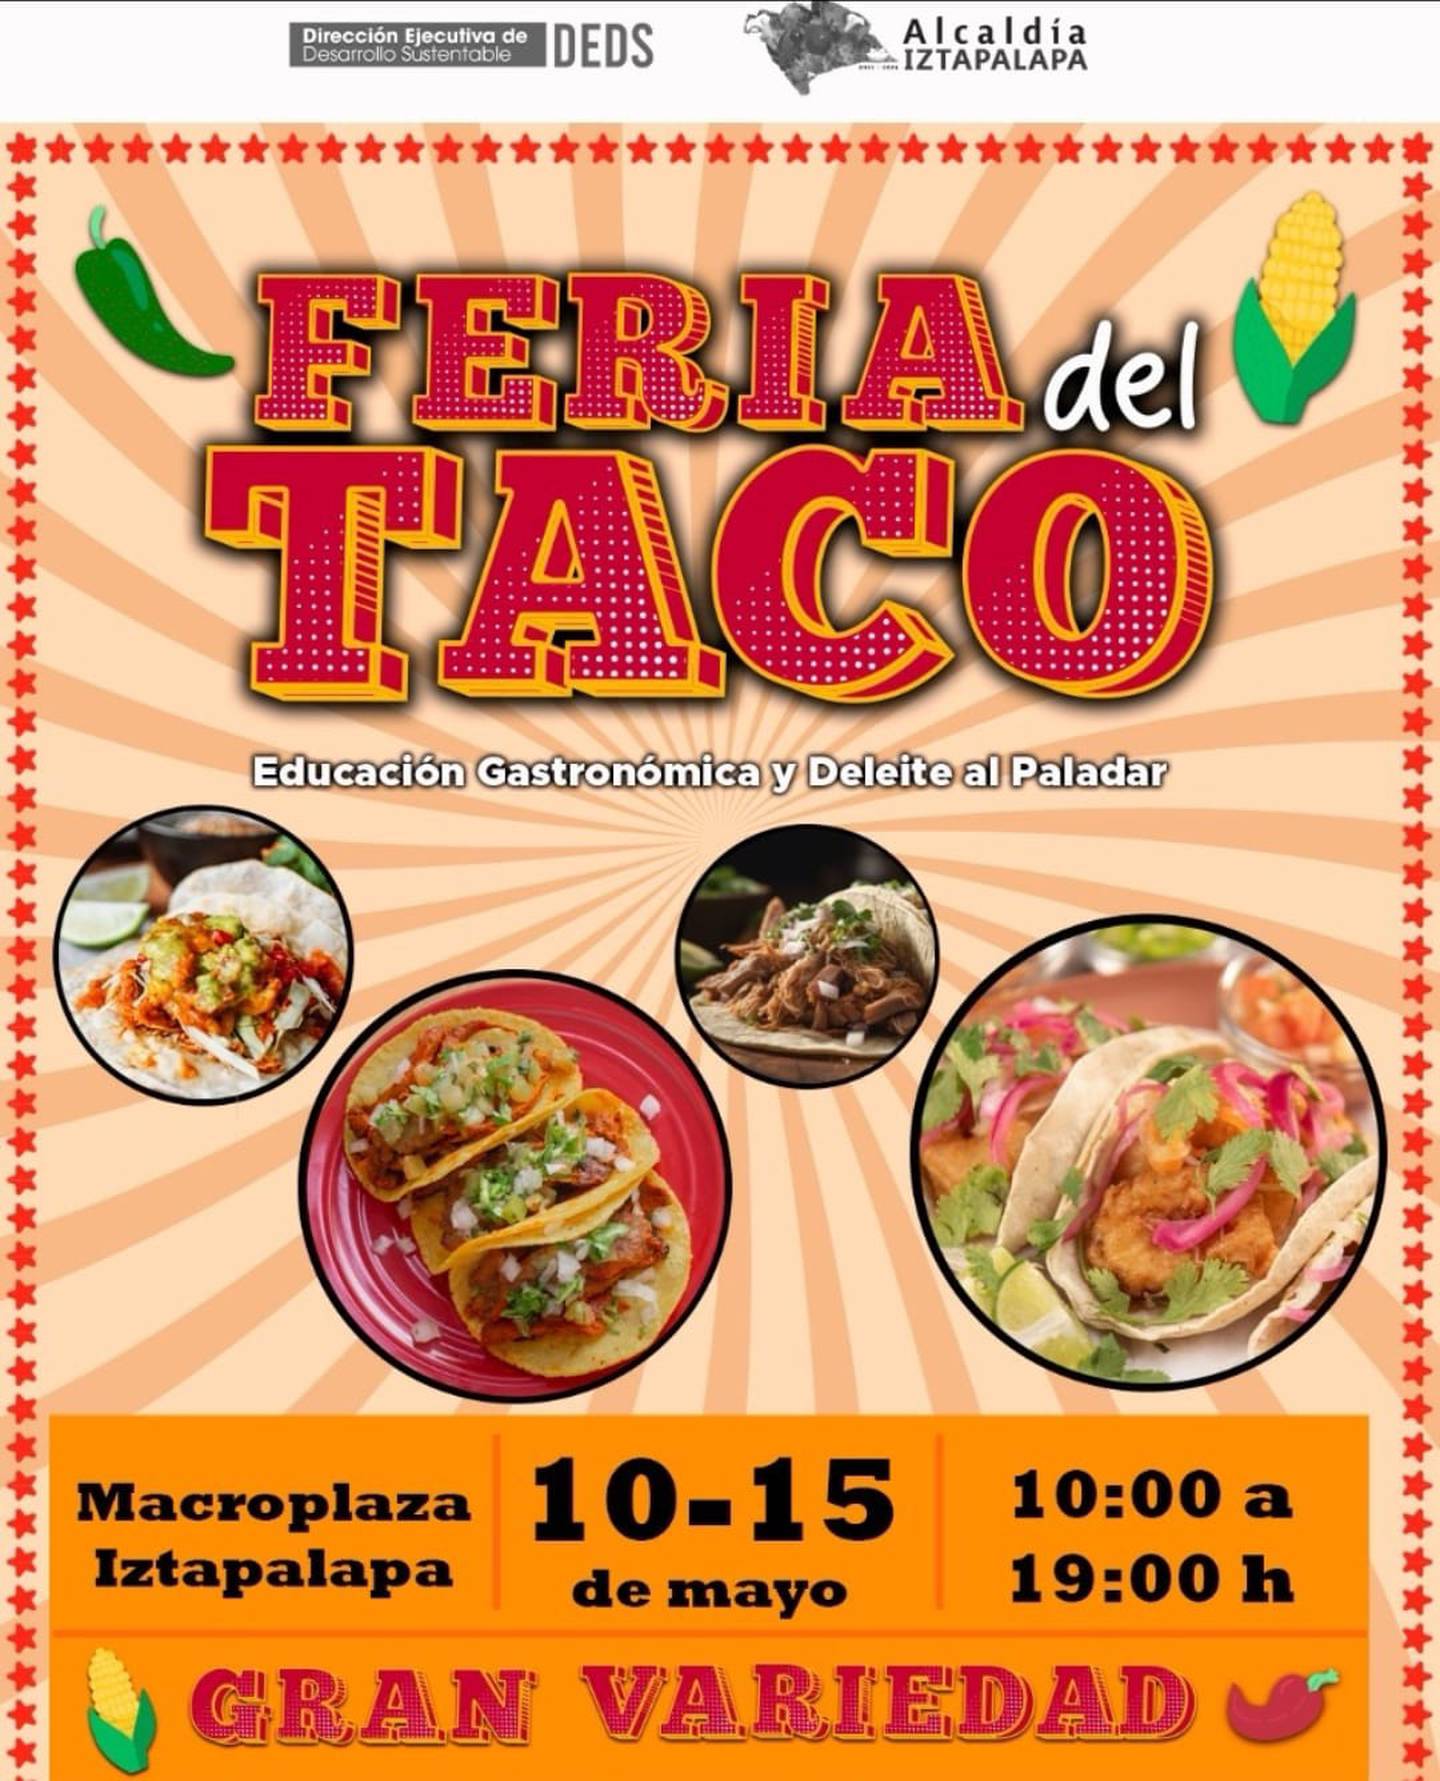 The poster of the Taco Fair in Iztapalapa.  (Photo: X @Alc_Iztapalapa)